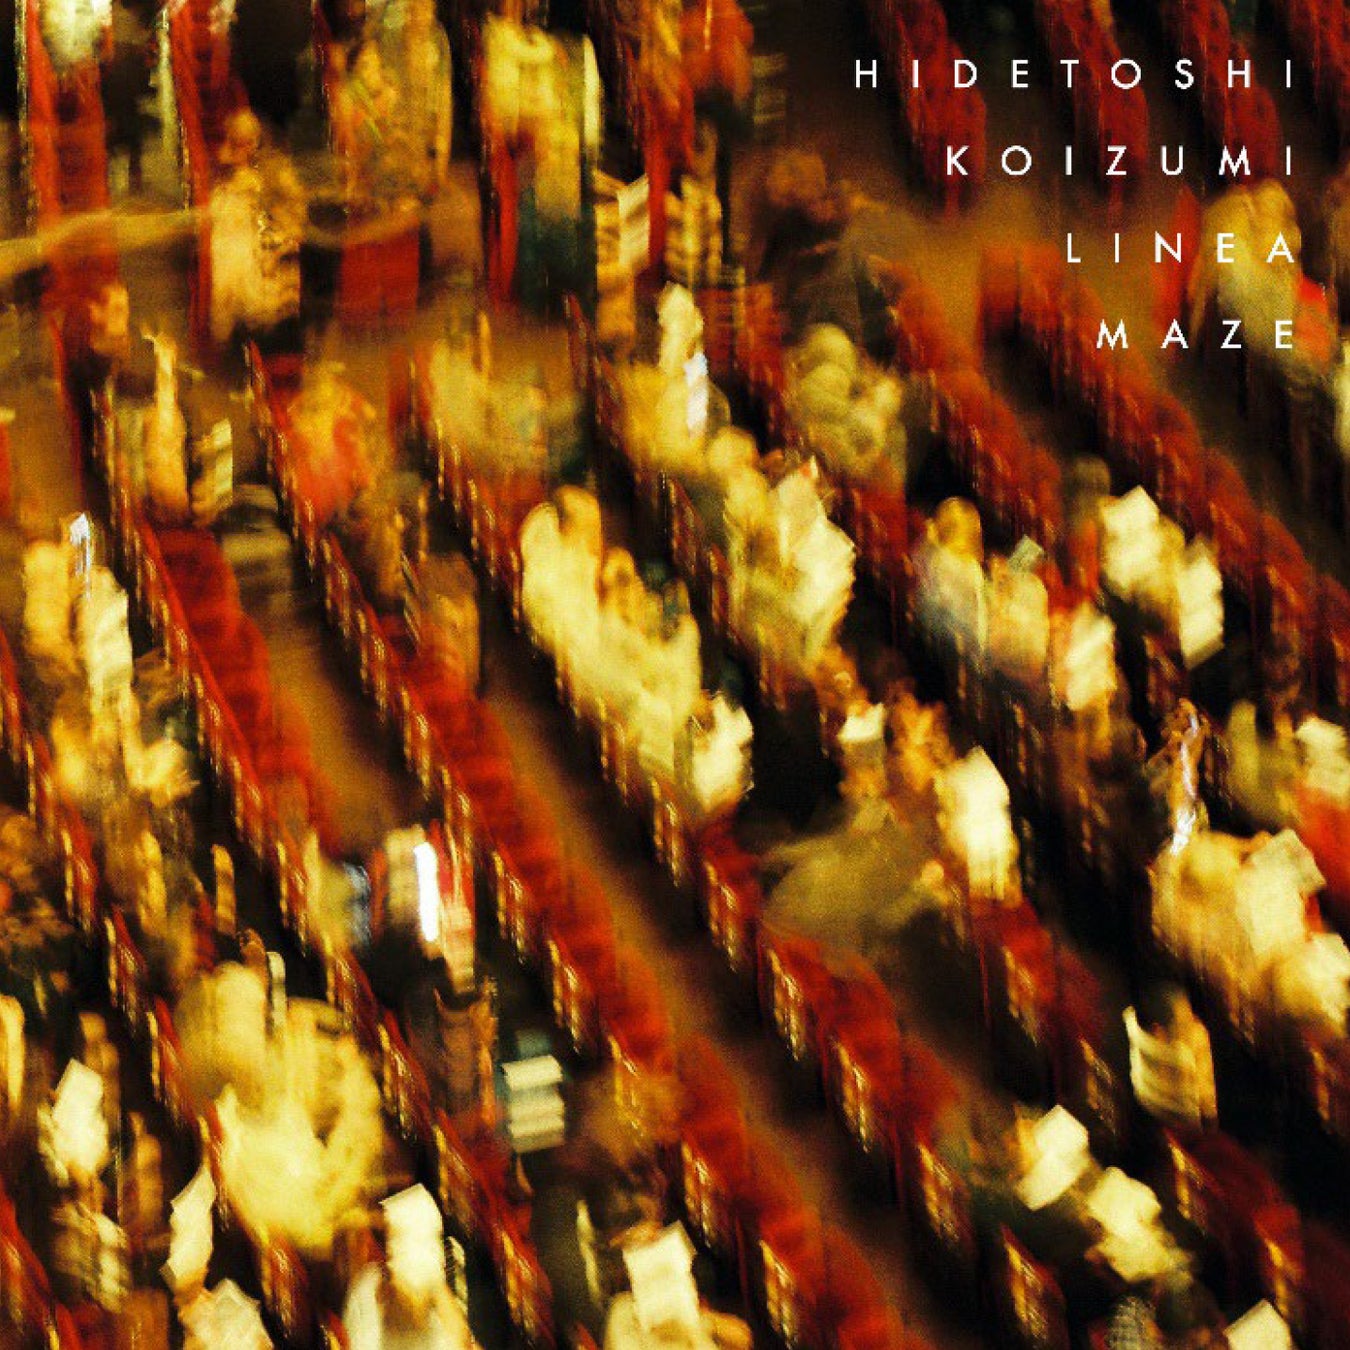 フランスで活躍する異才のアンビエント音楽家Hidetoshi Koizumiがニューミニアルバム「Linear maze」を4/21にリリース！